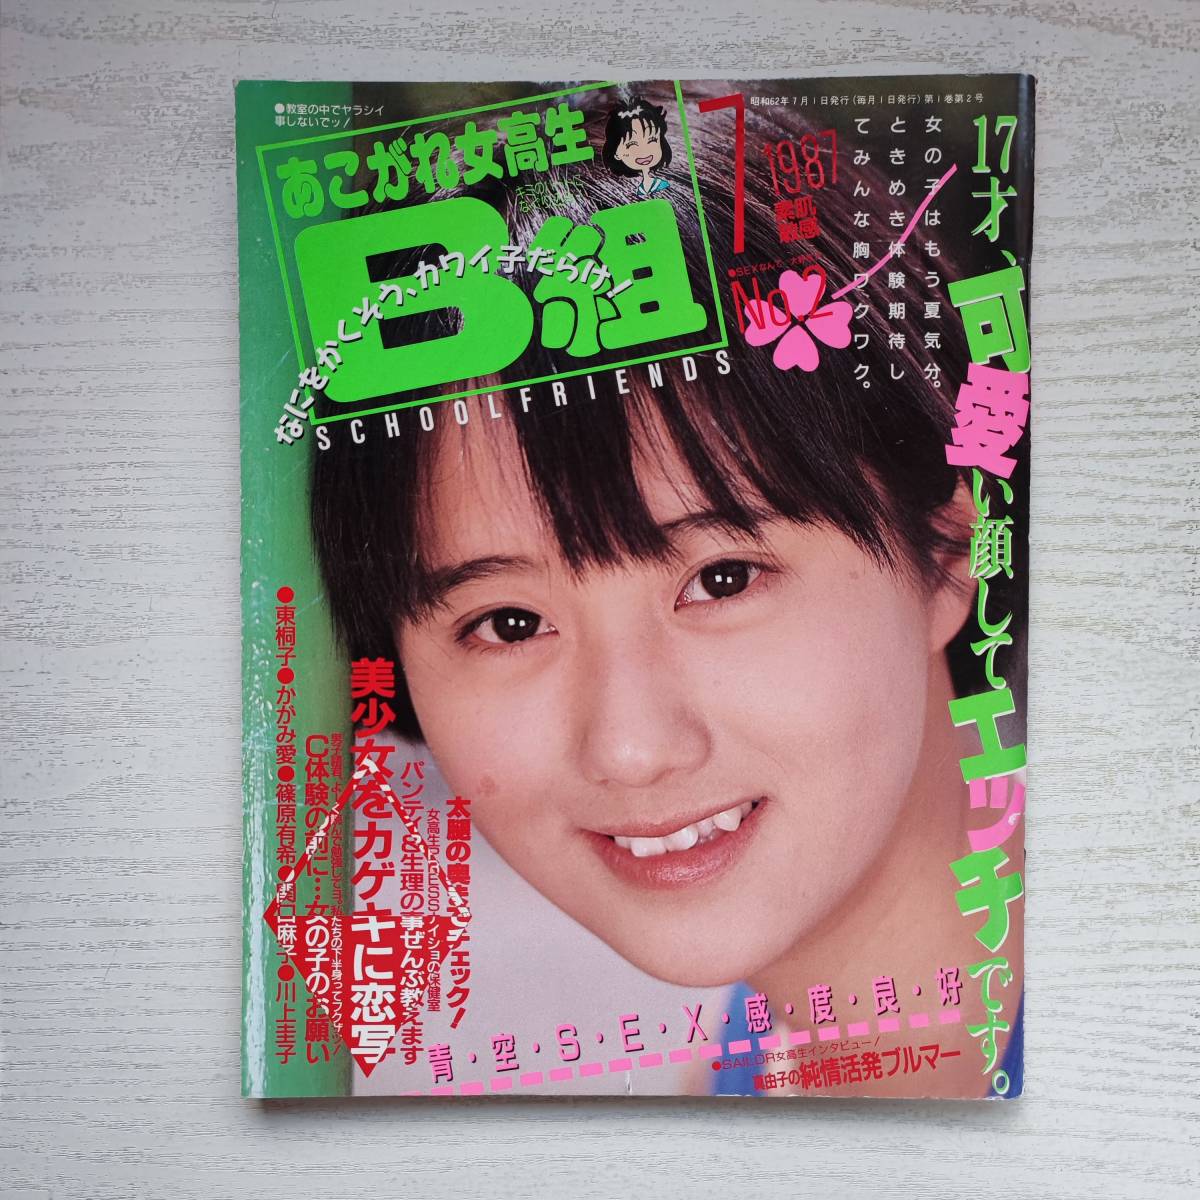 【雑誌】あこがれ女高生B組1987年7月号 創刊第2号 考友社出版